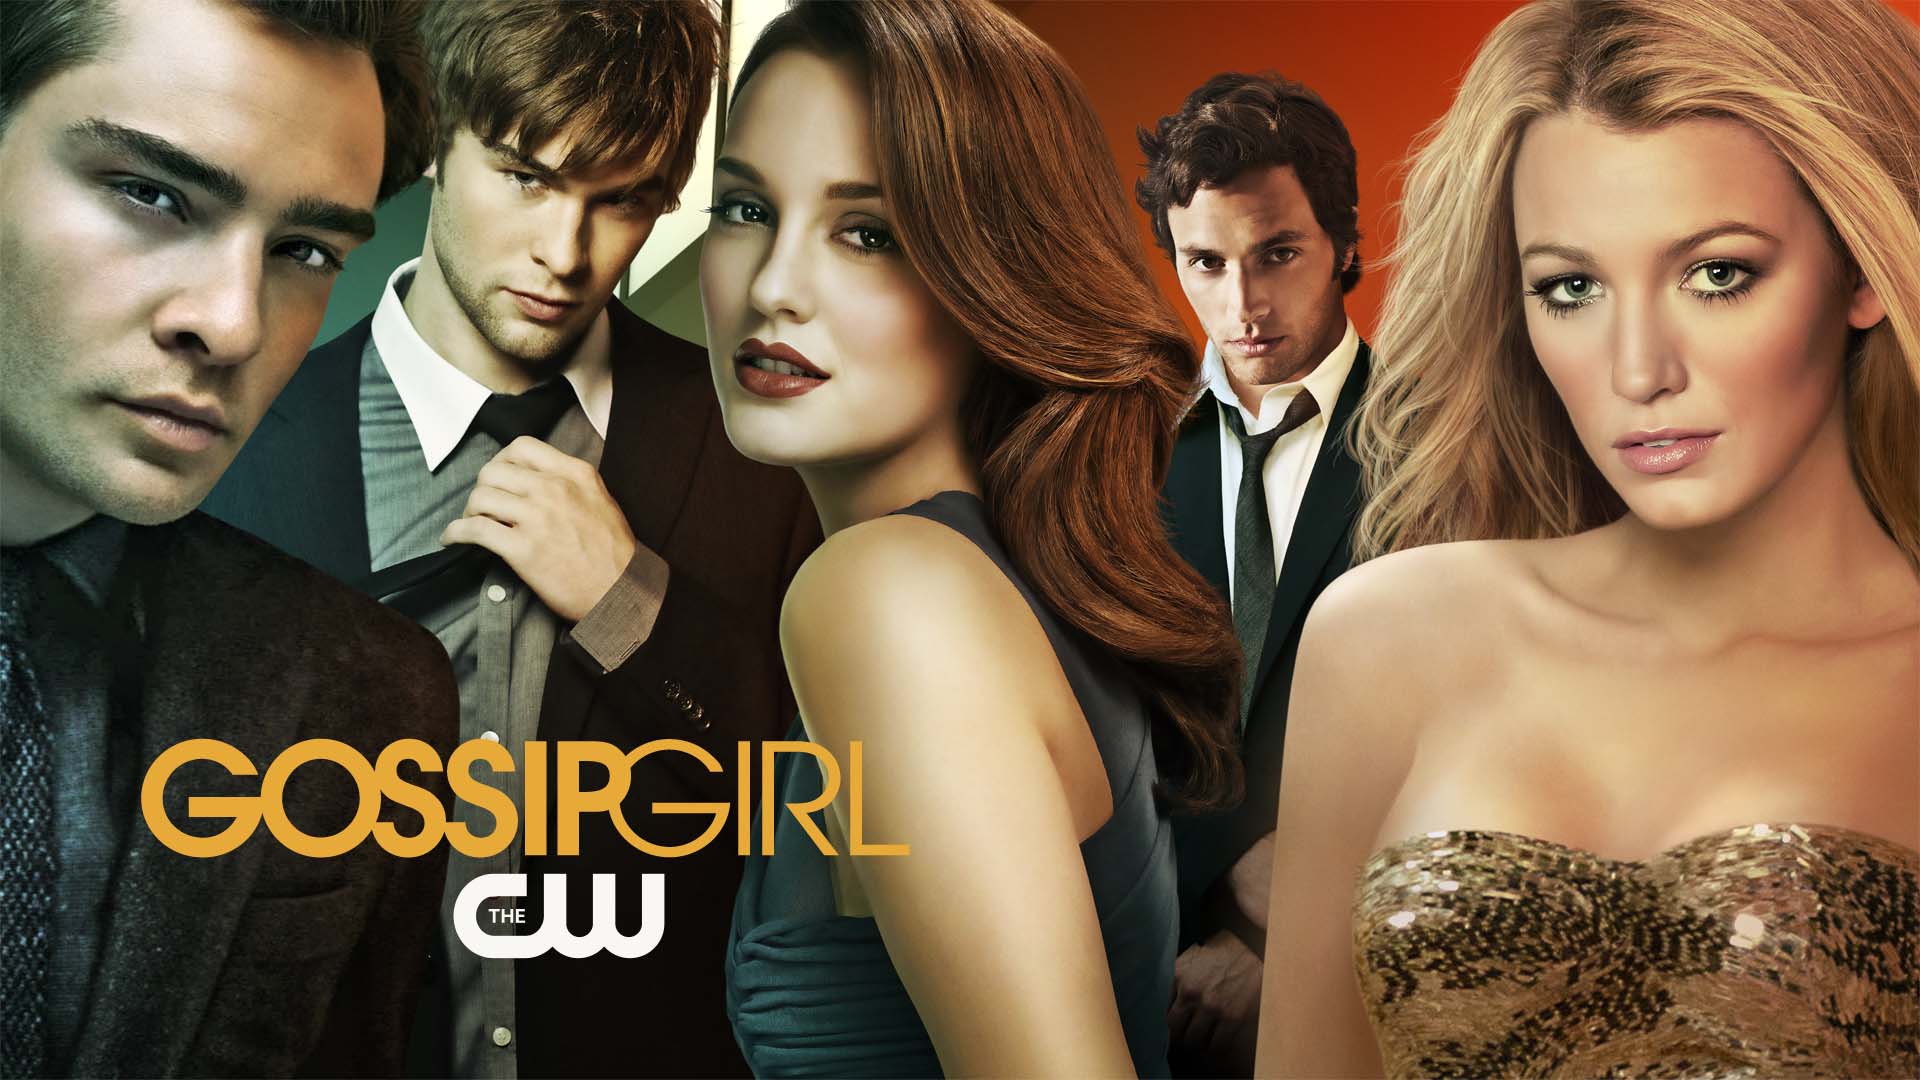 gossip girl season 5 download complete